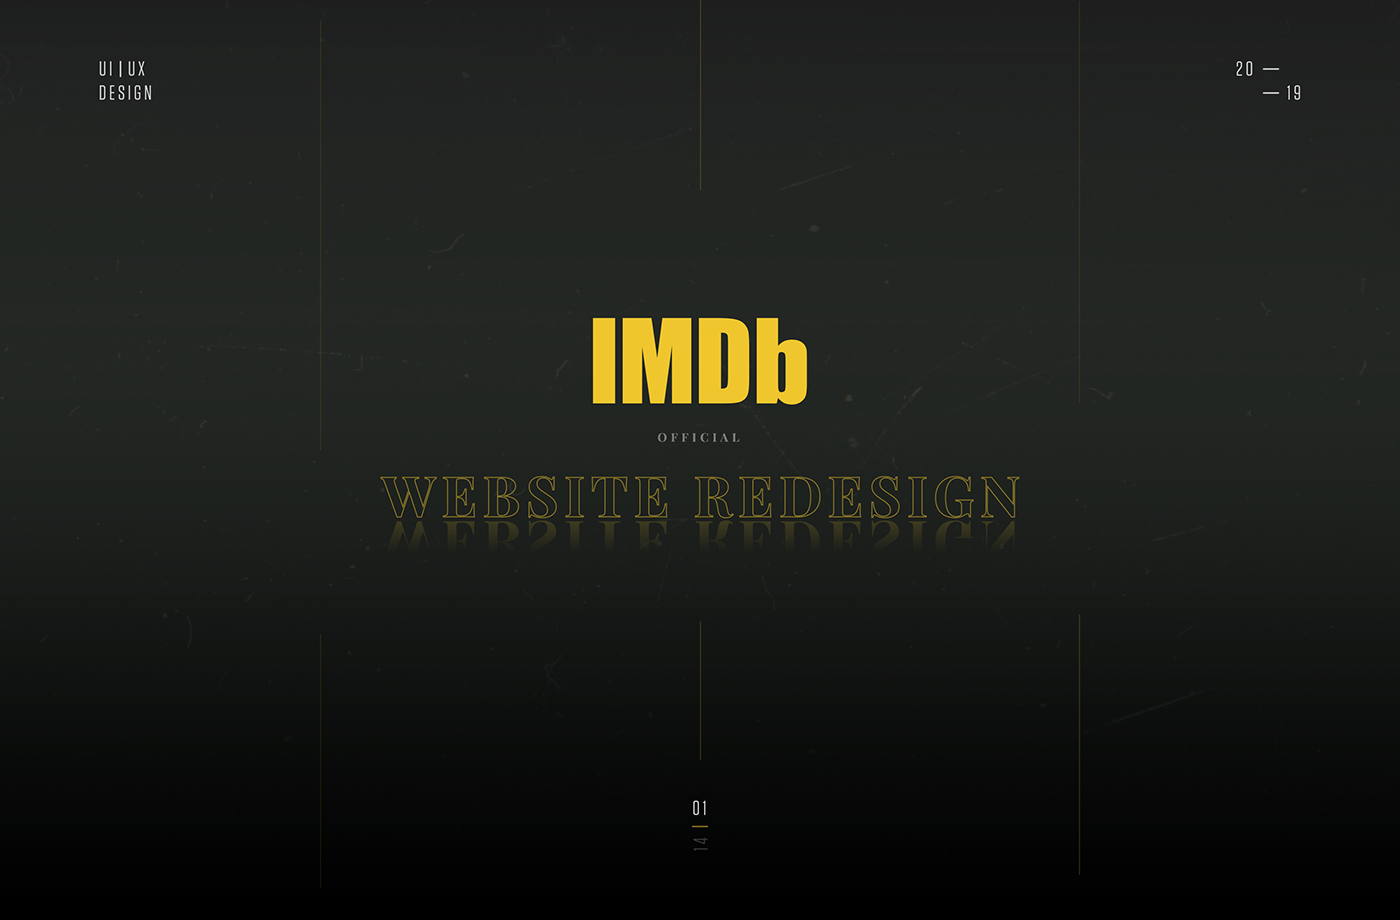 imdb movie films UI ux best top new brand MadeWithAdobeXd